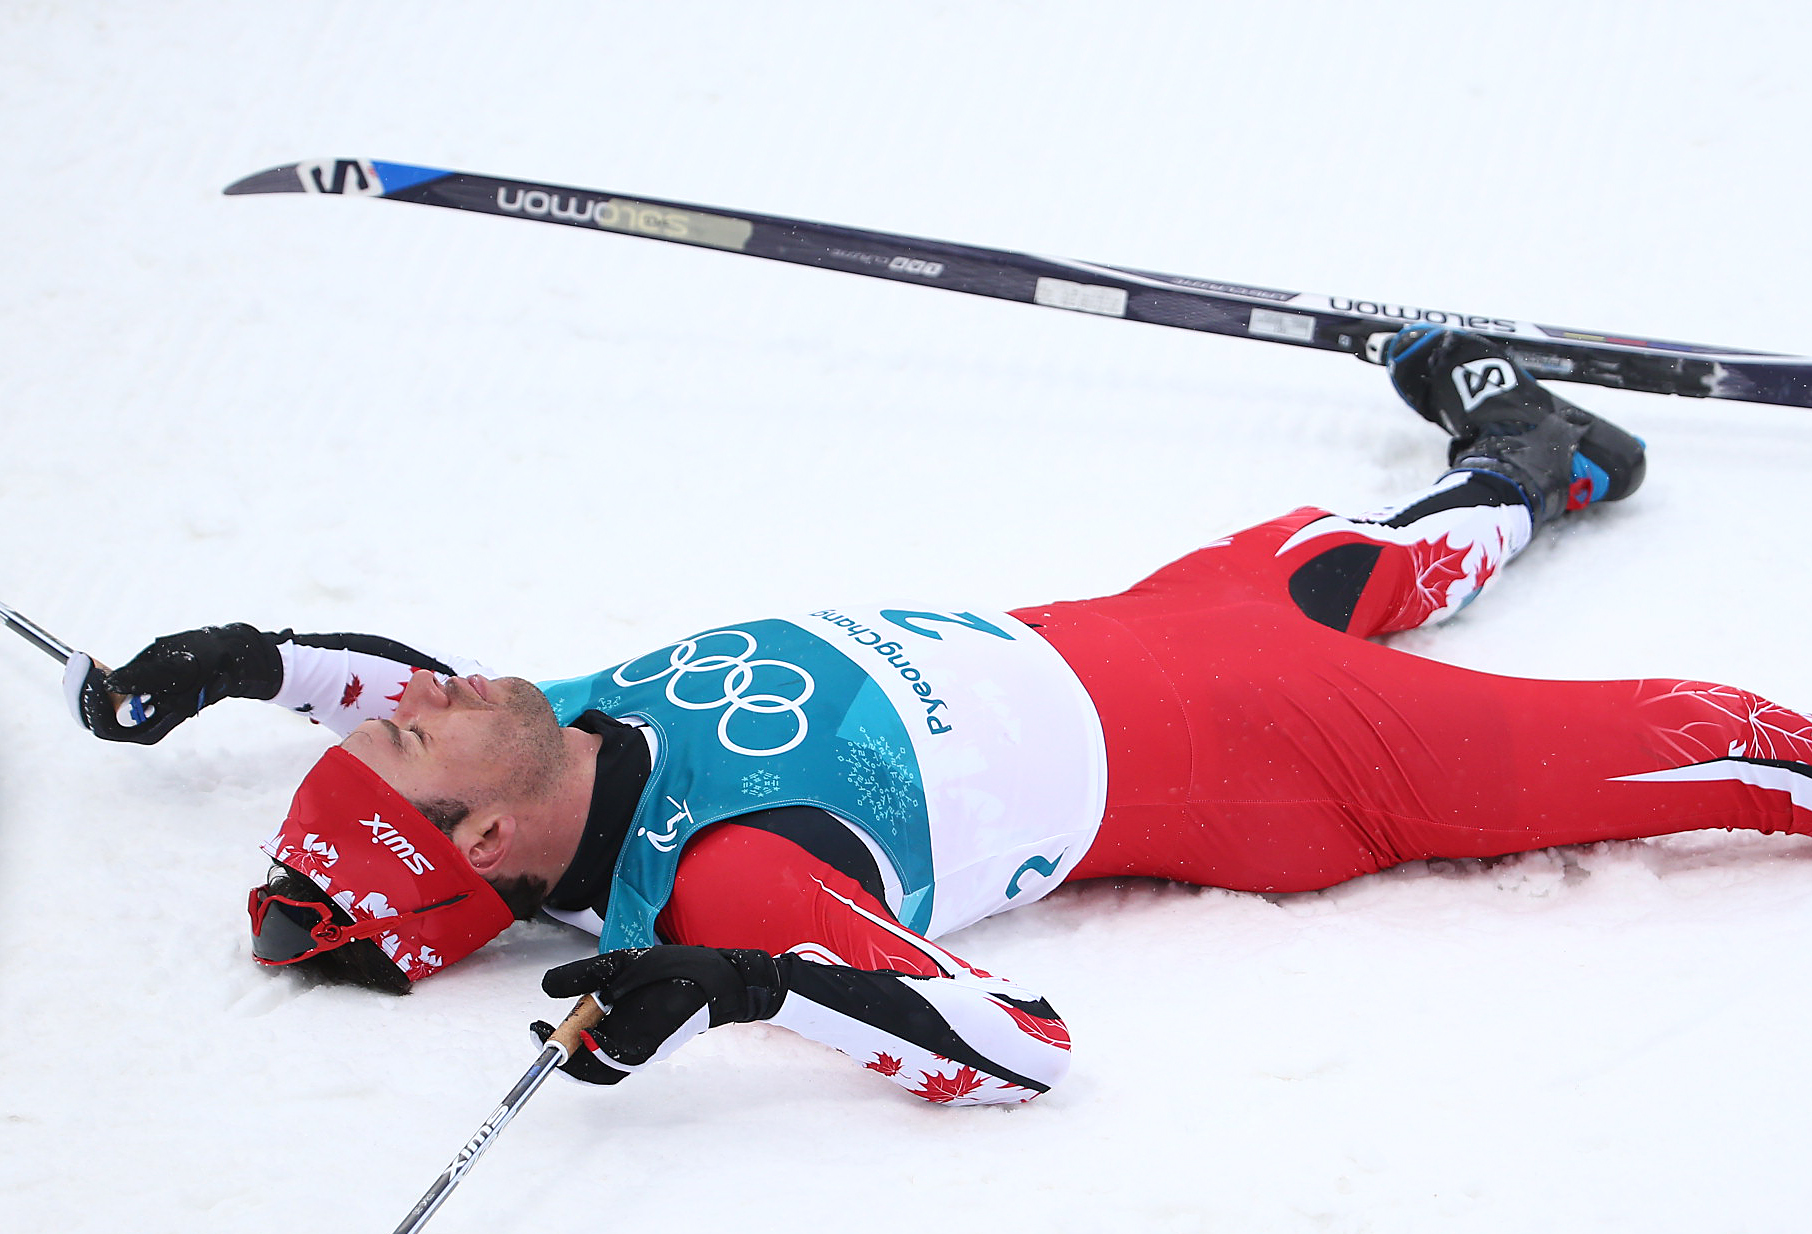  Le Canadien Alex Harvey au 50 km départ groupé en style classique au Centre de ski de fond d'Alpensia lors des Jeux olympiques d'hiver de PyeongChang 2018 à PyeongChang, en Corée du Sud, le 24 février 2018. (Photo : Vaughn Ridley/COC)